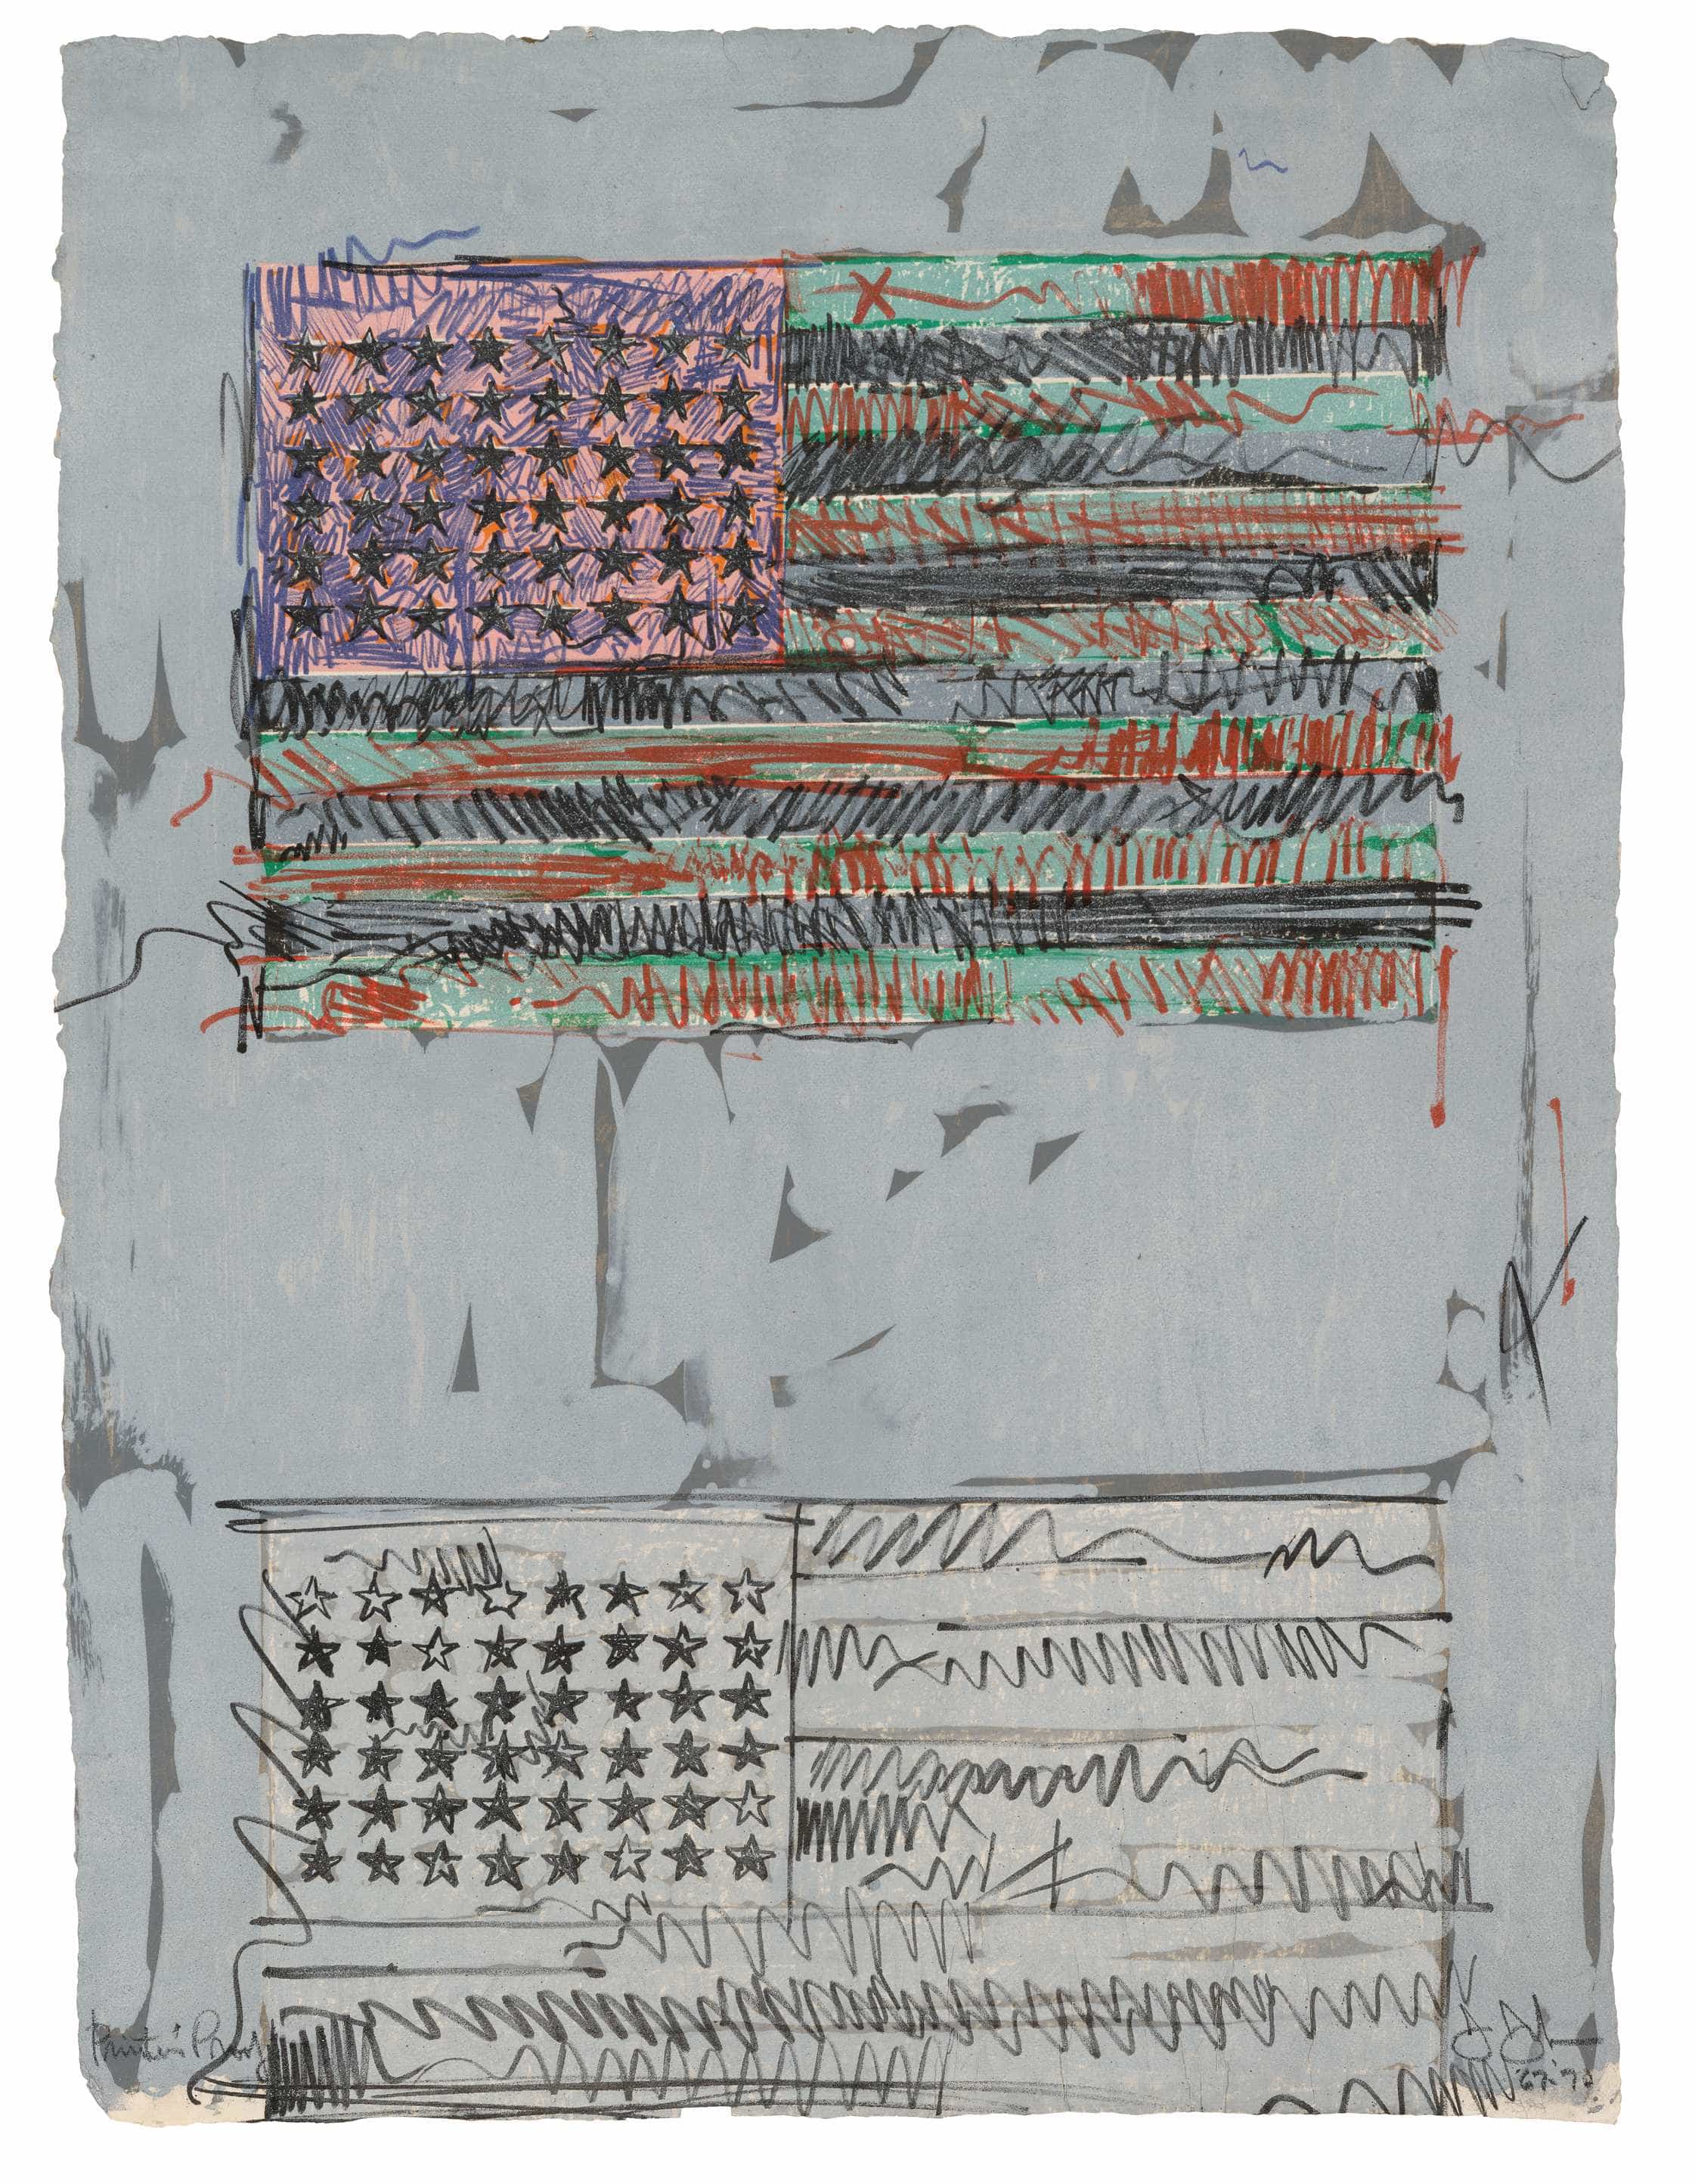 Jasper Johns, Flags II, 1967-70